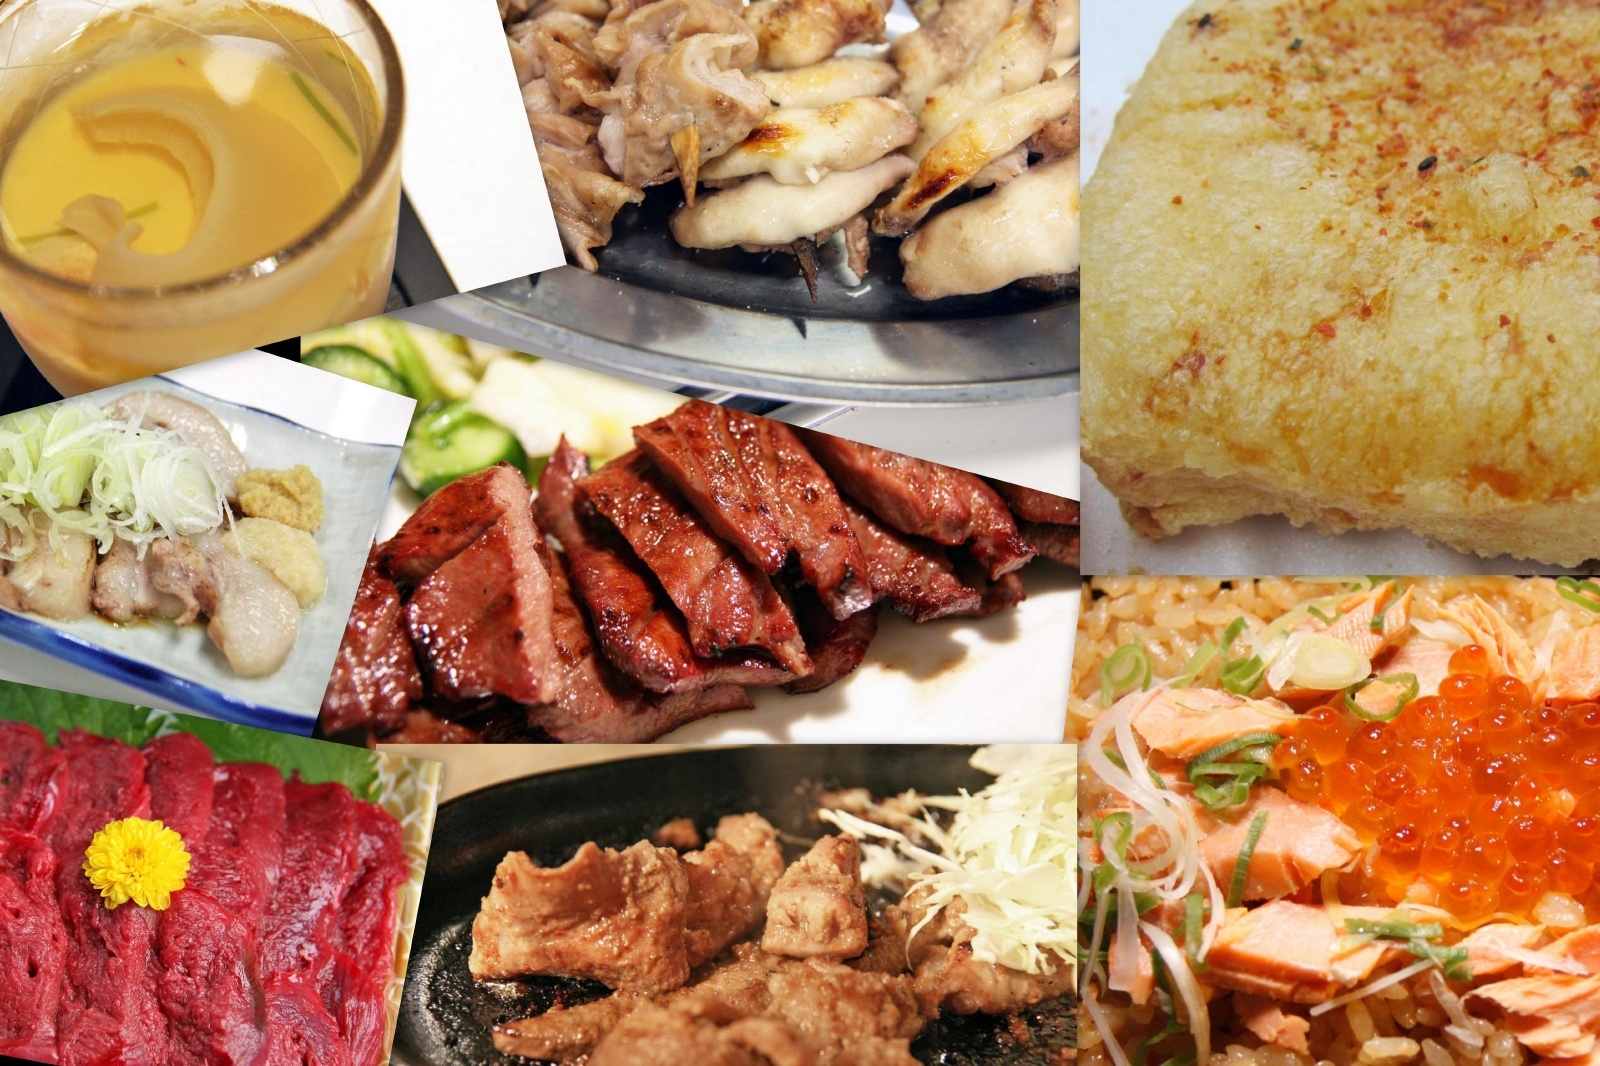 出張で 観光で 宮城に行ったら絶対食べたい 美味しい宮城の食べ物 宮城の郷土料理 Japan Web Magazine